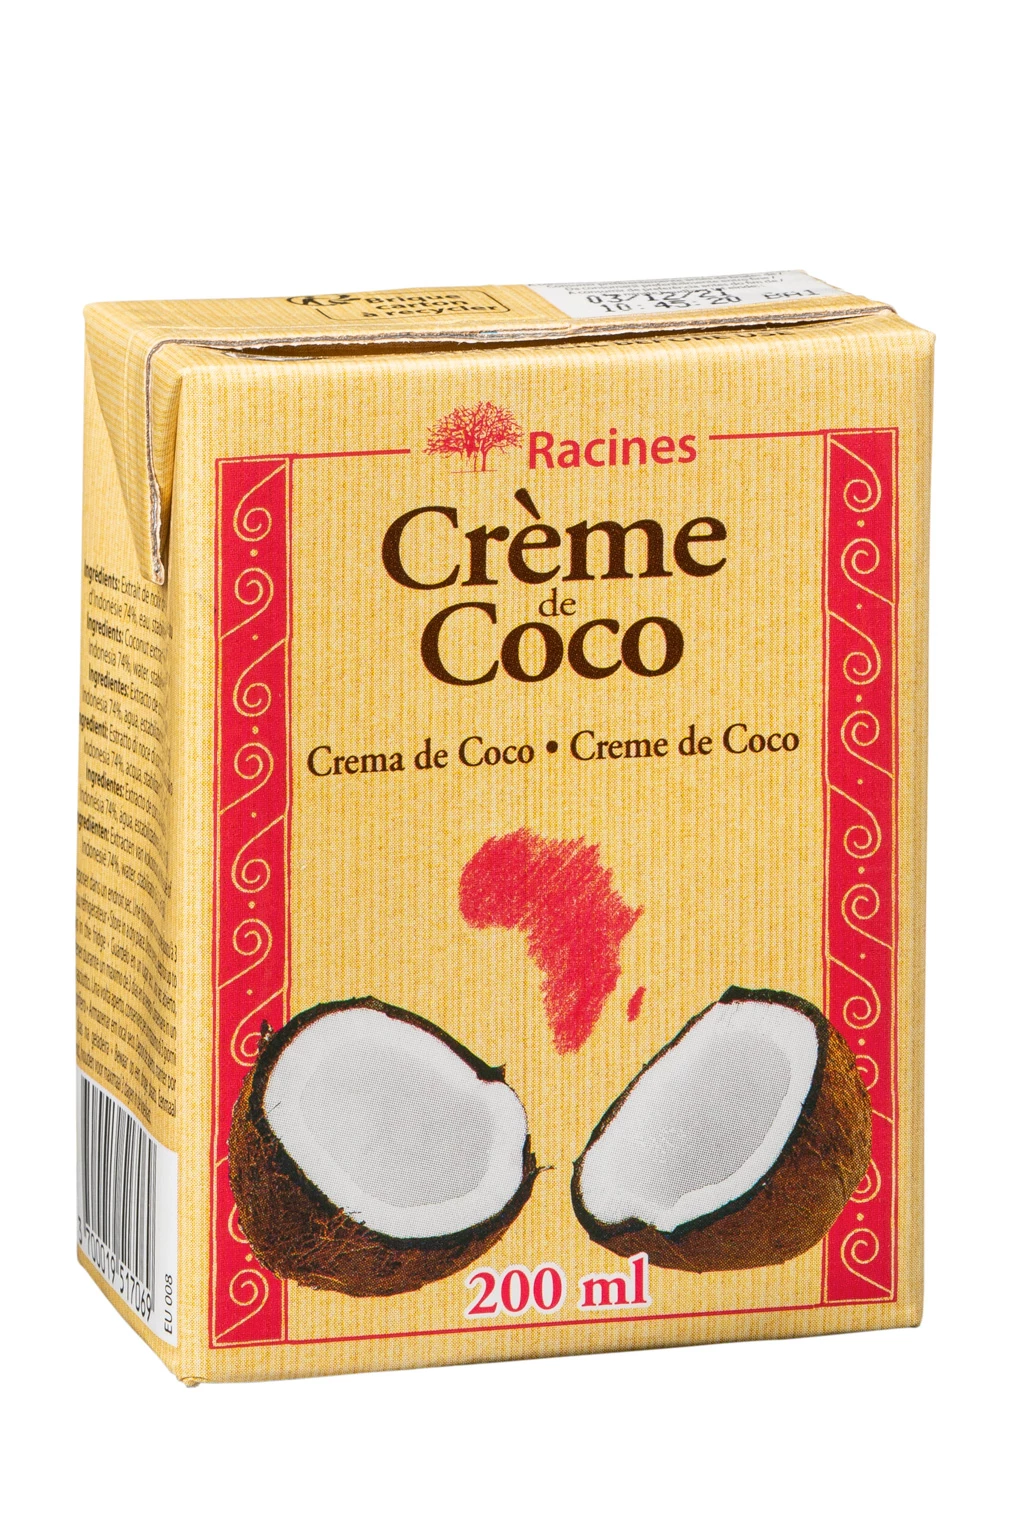 Crema De Coco (24 X 200 Ml) Tetrapack - Racines